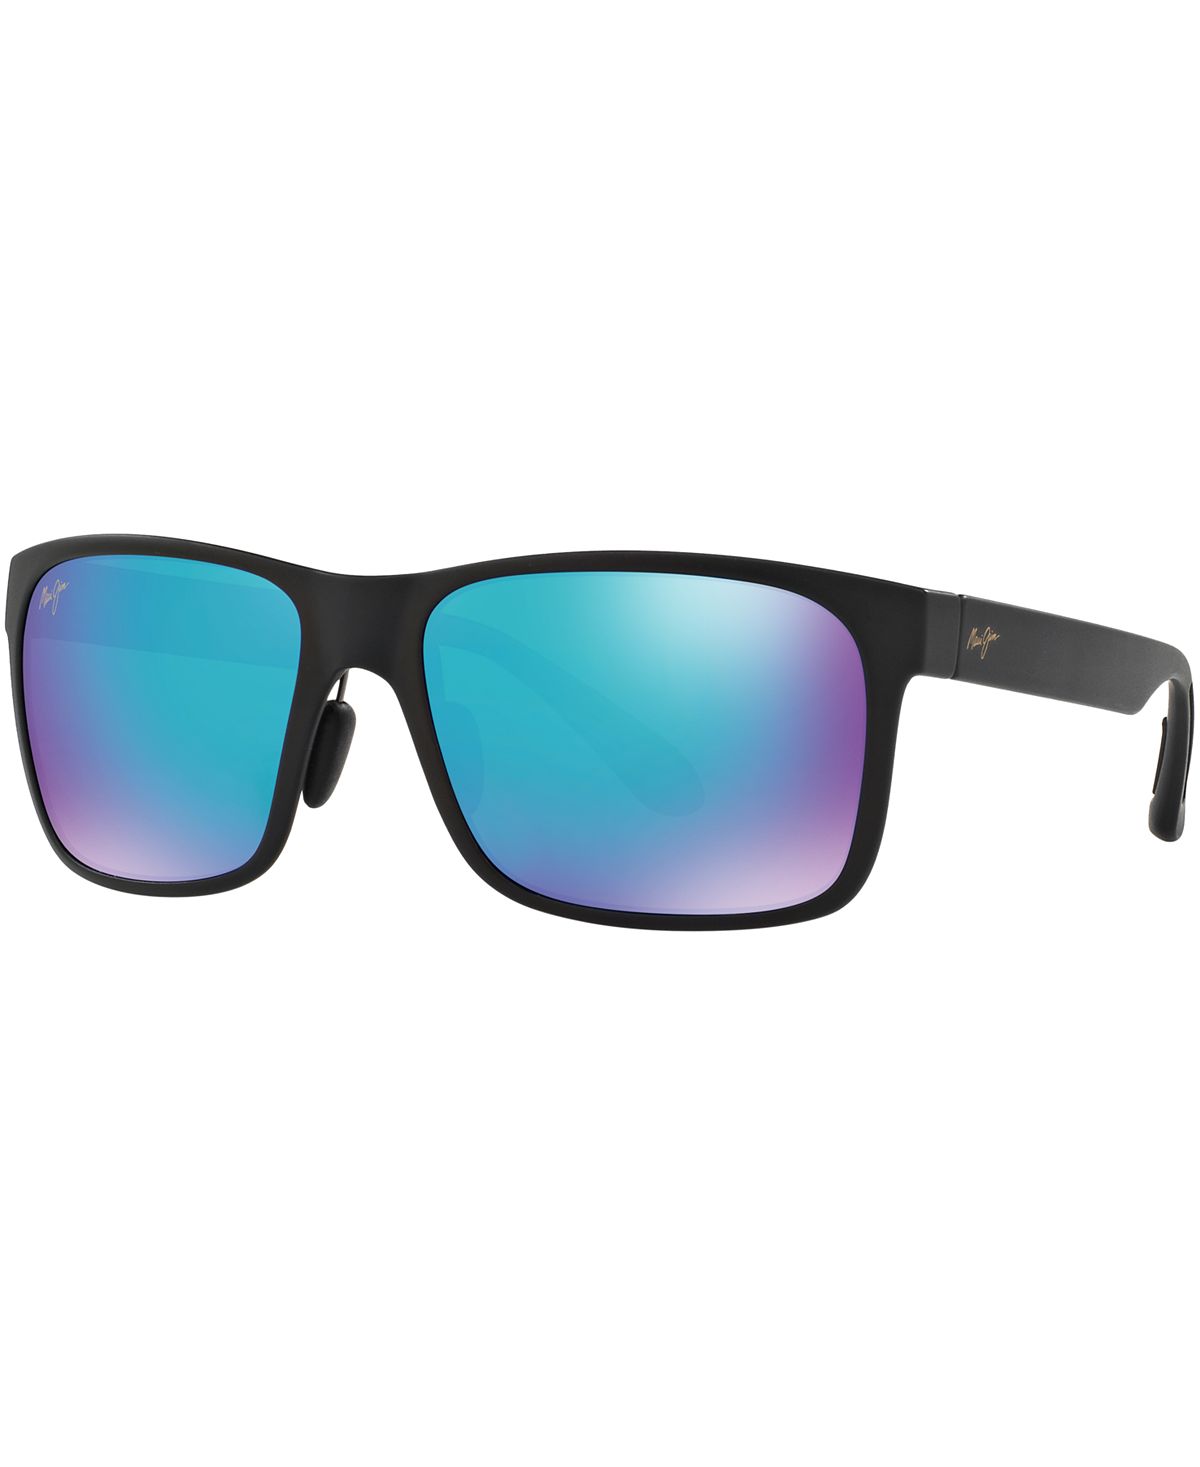 Поляризованные солнцезащитные очки Red Sands, коллекция 432 Blue Hawaii Maui Jim солнцезащитные очки kou maui jim цвет navy blue blue hawaii